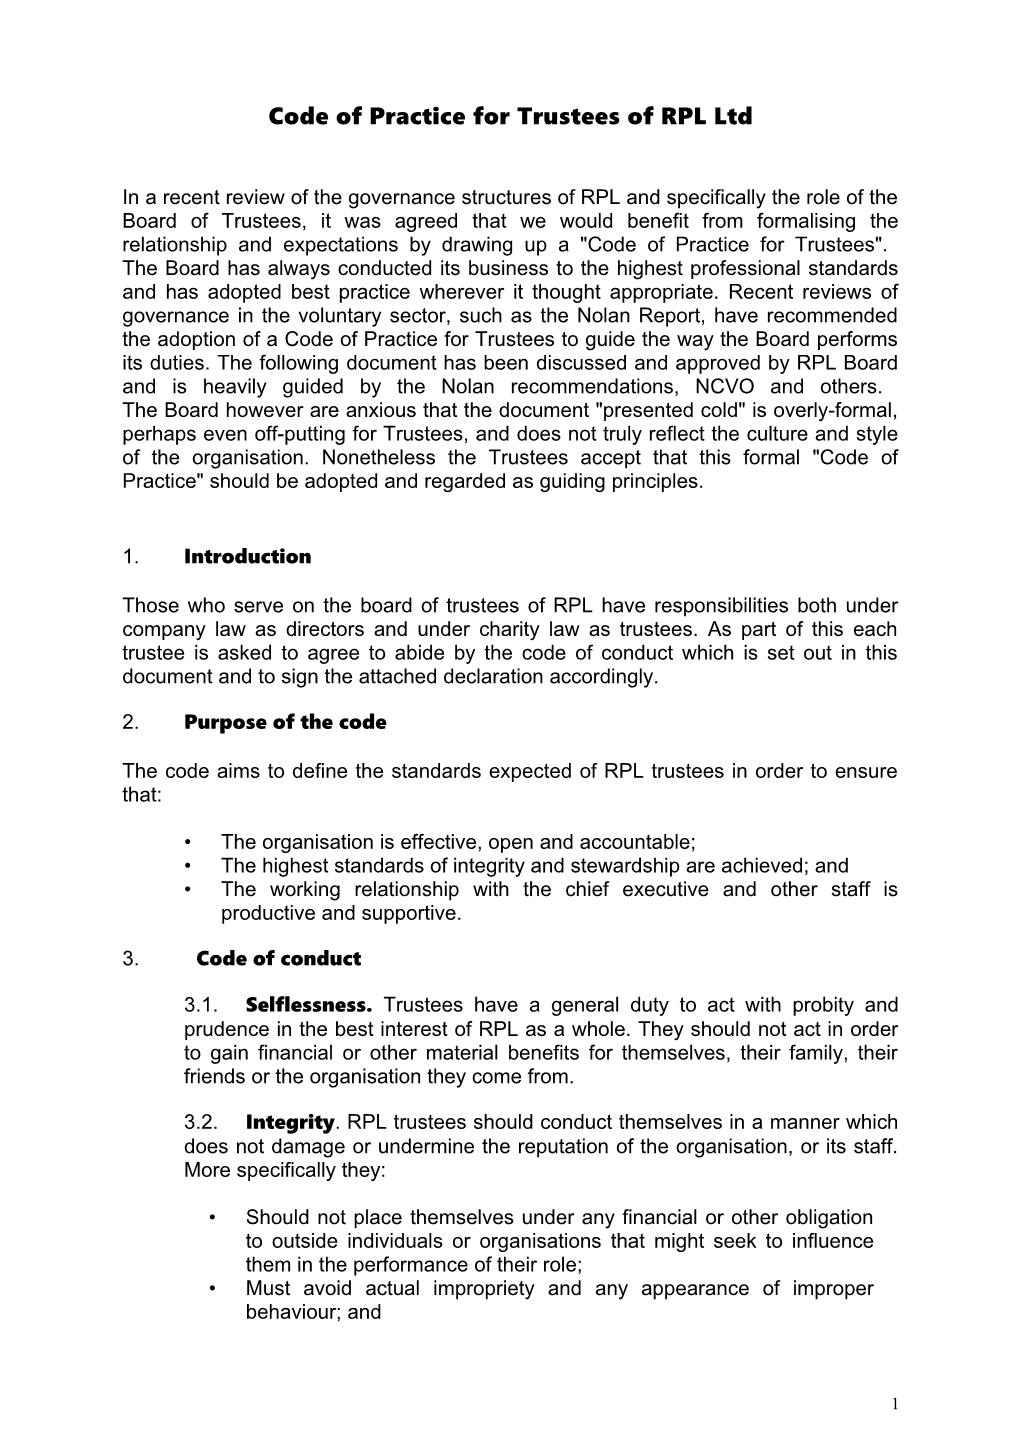 Code of Practice for Trustees of Sustrans Ltd